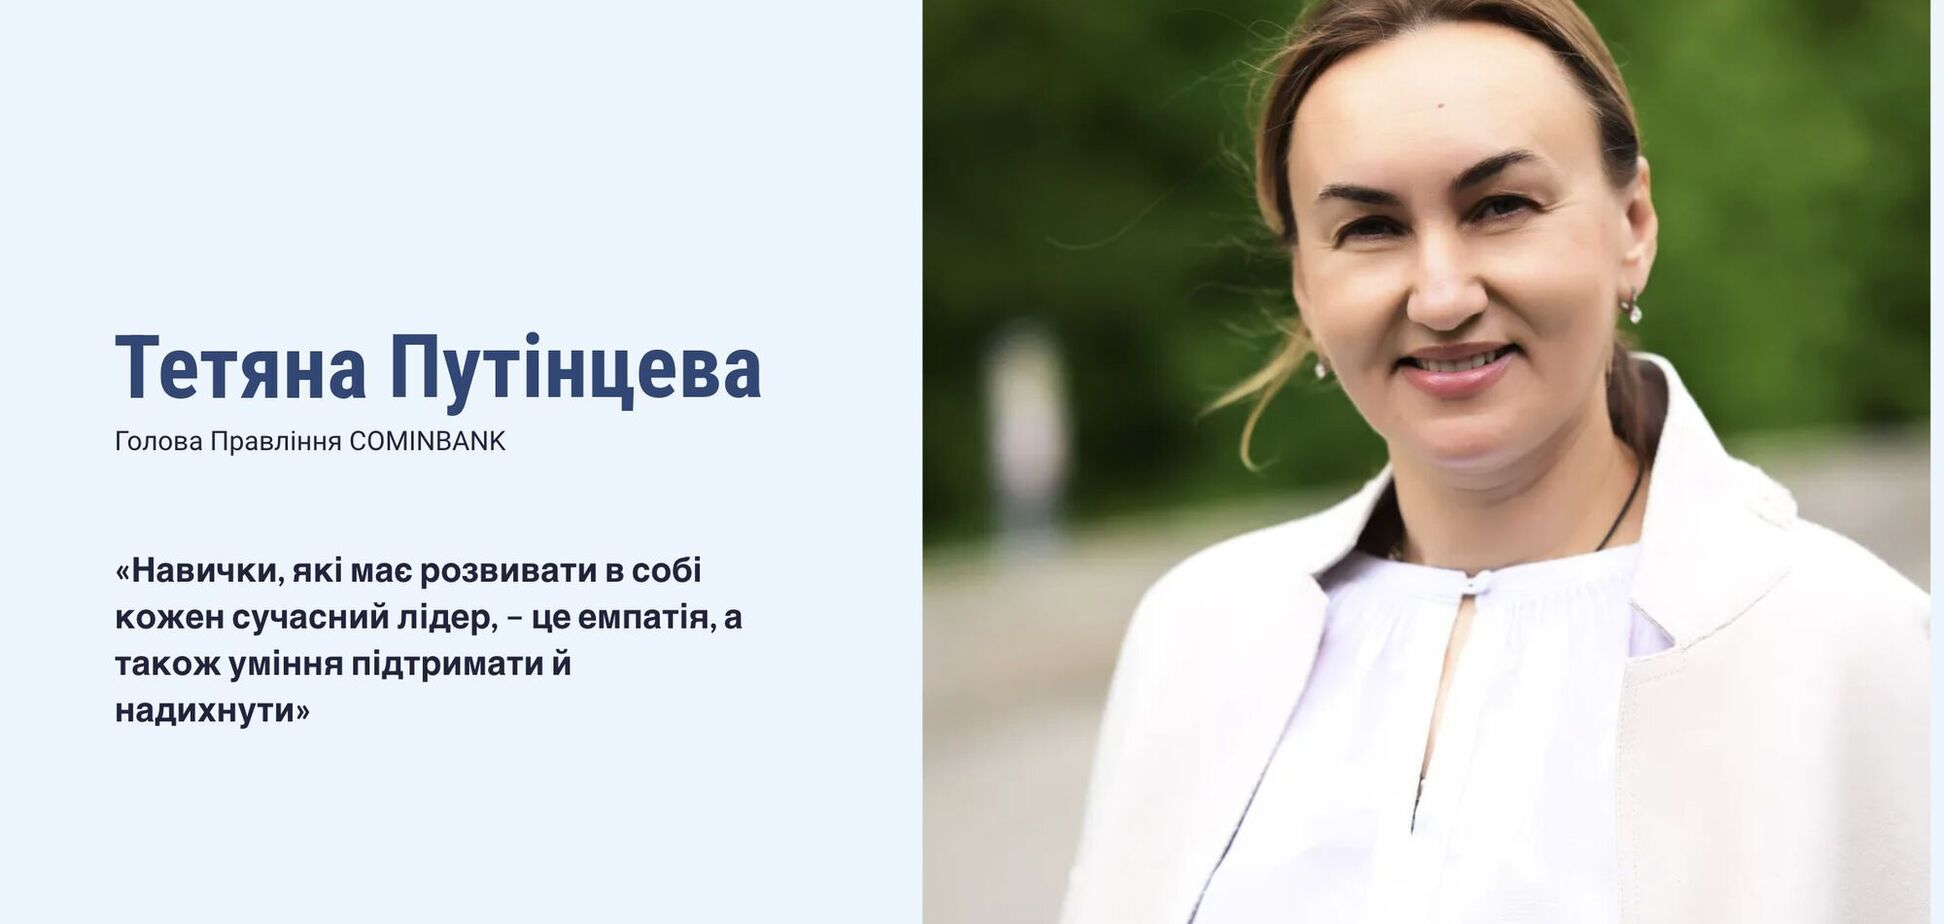 Тетяна Путінцева: навички, які має розвивати в собі кожен сучасний лідер, – це емпатія, а також уміння підтримати й надихнути